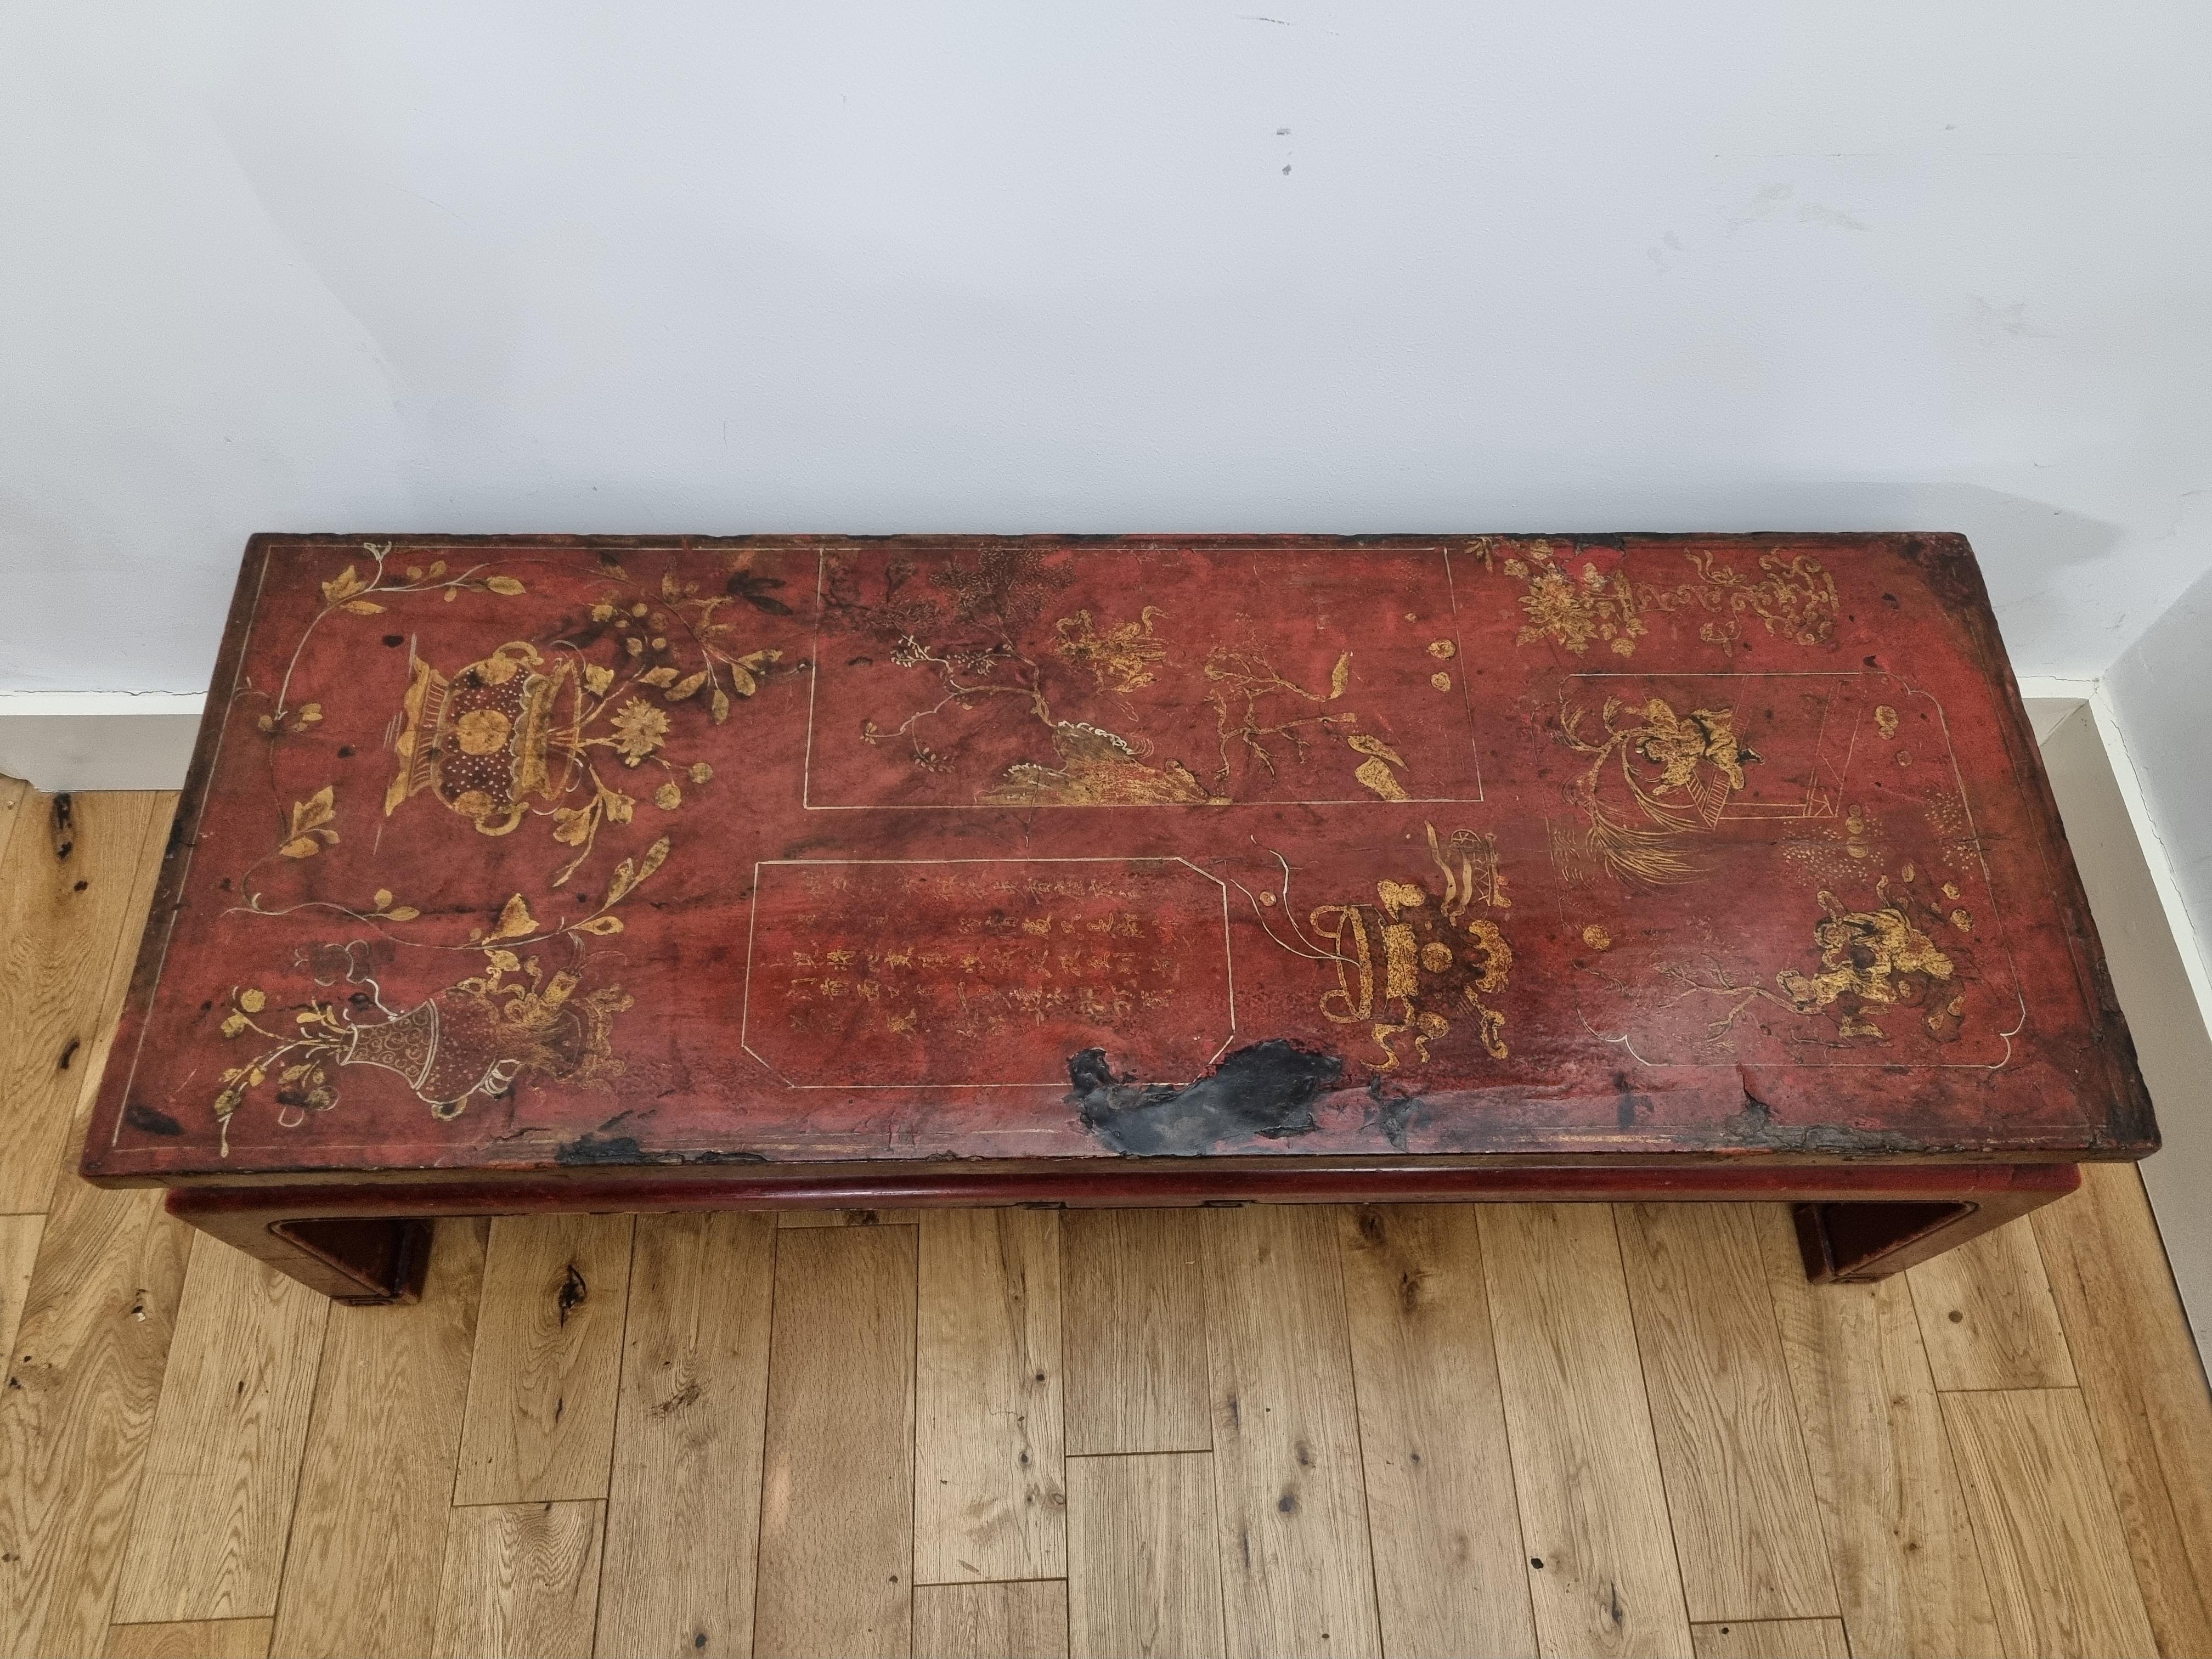 Chinois Table basse chinoise laquée rouge du 19ème siècle de la province de Shanxi